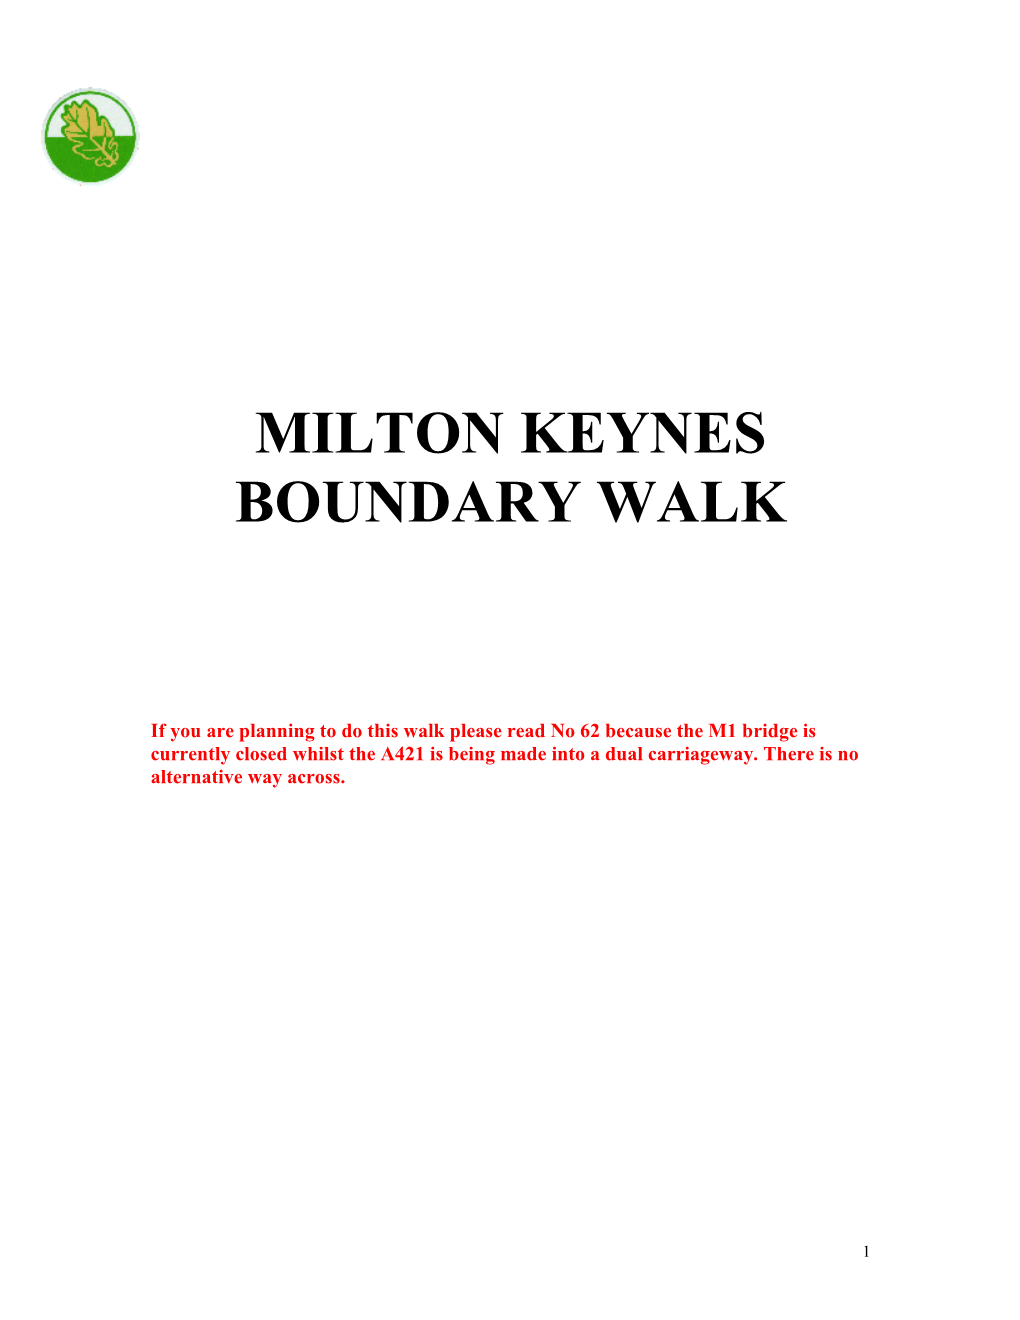 Milton Keynes Boundary Walk